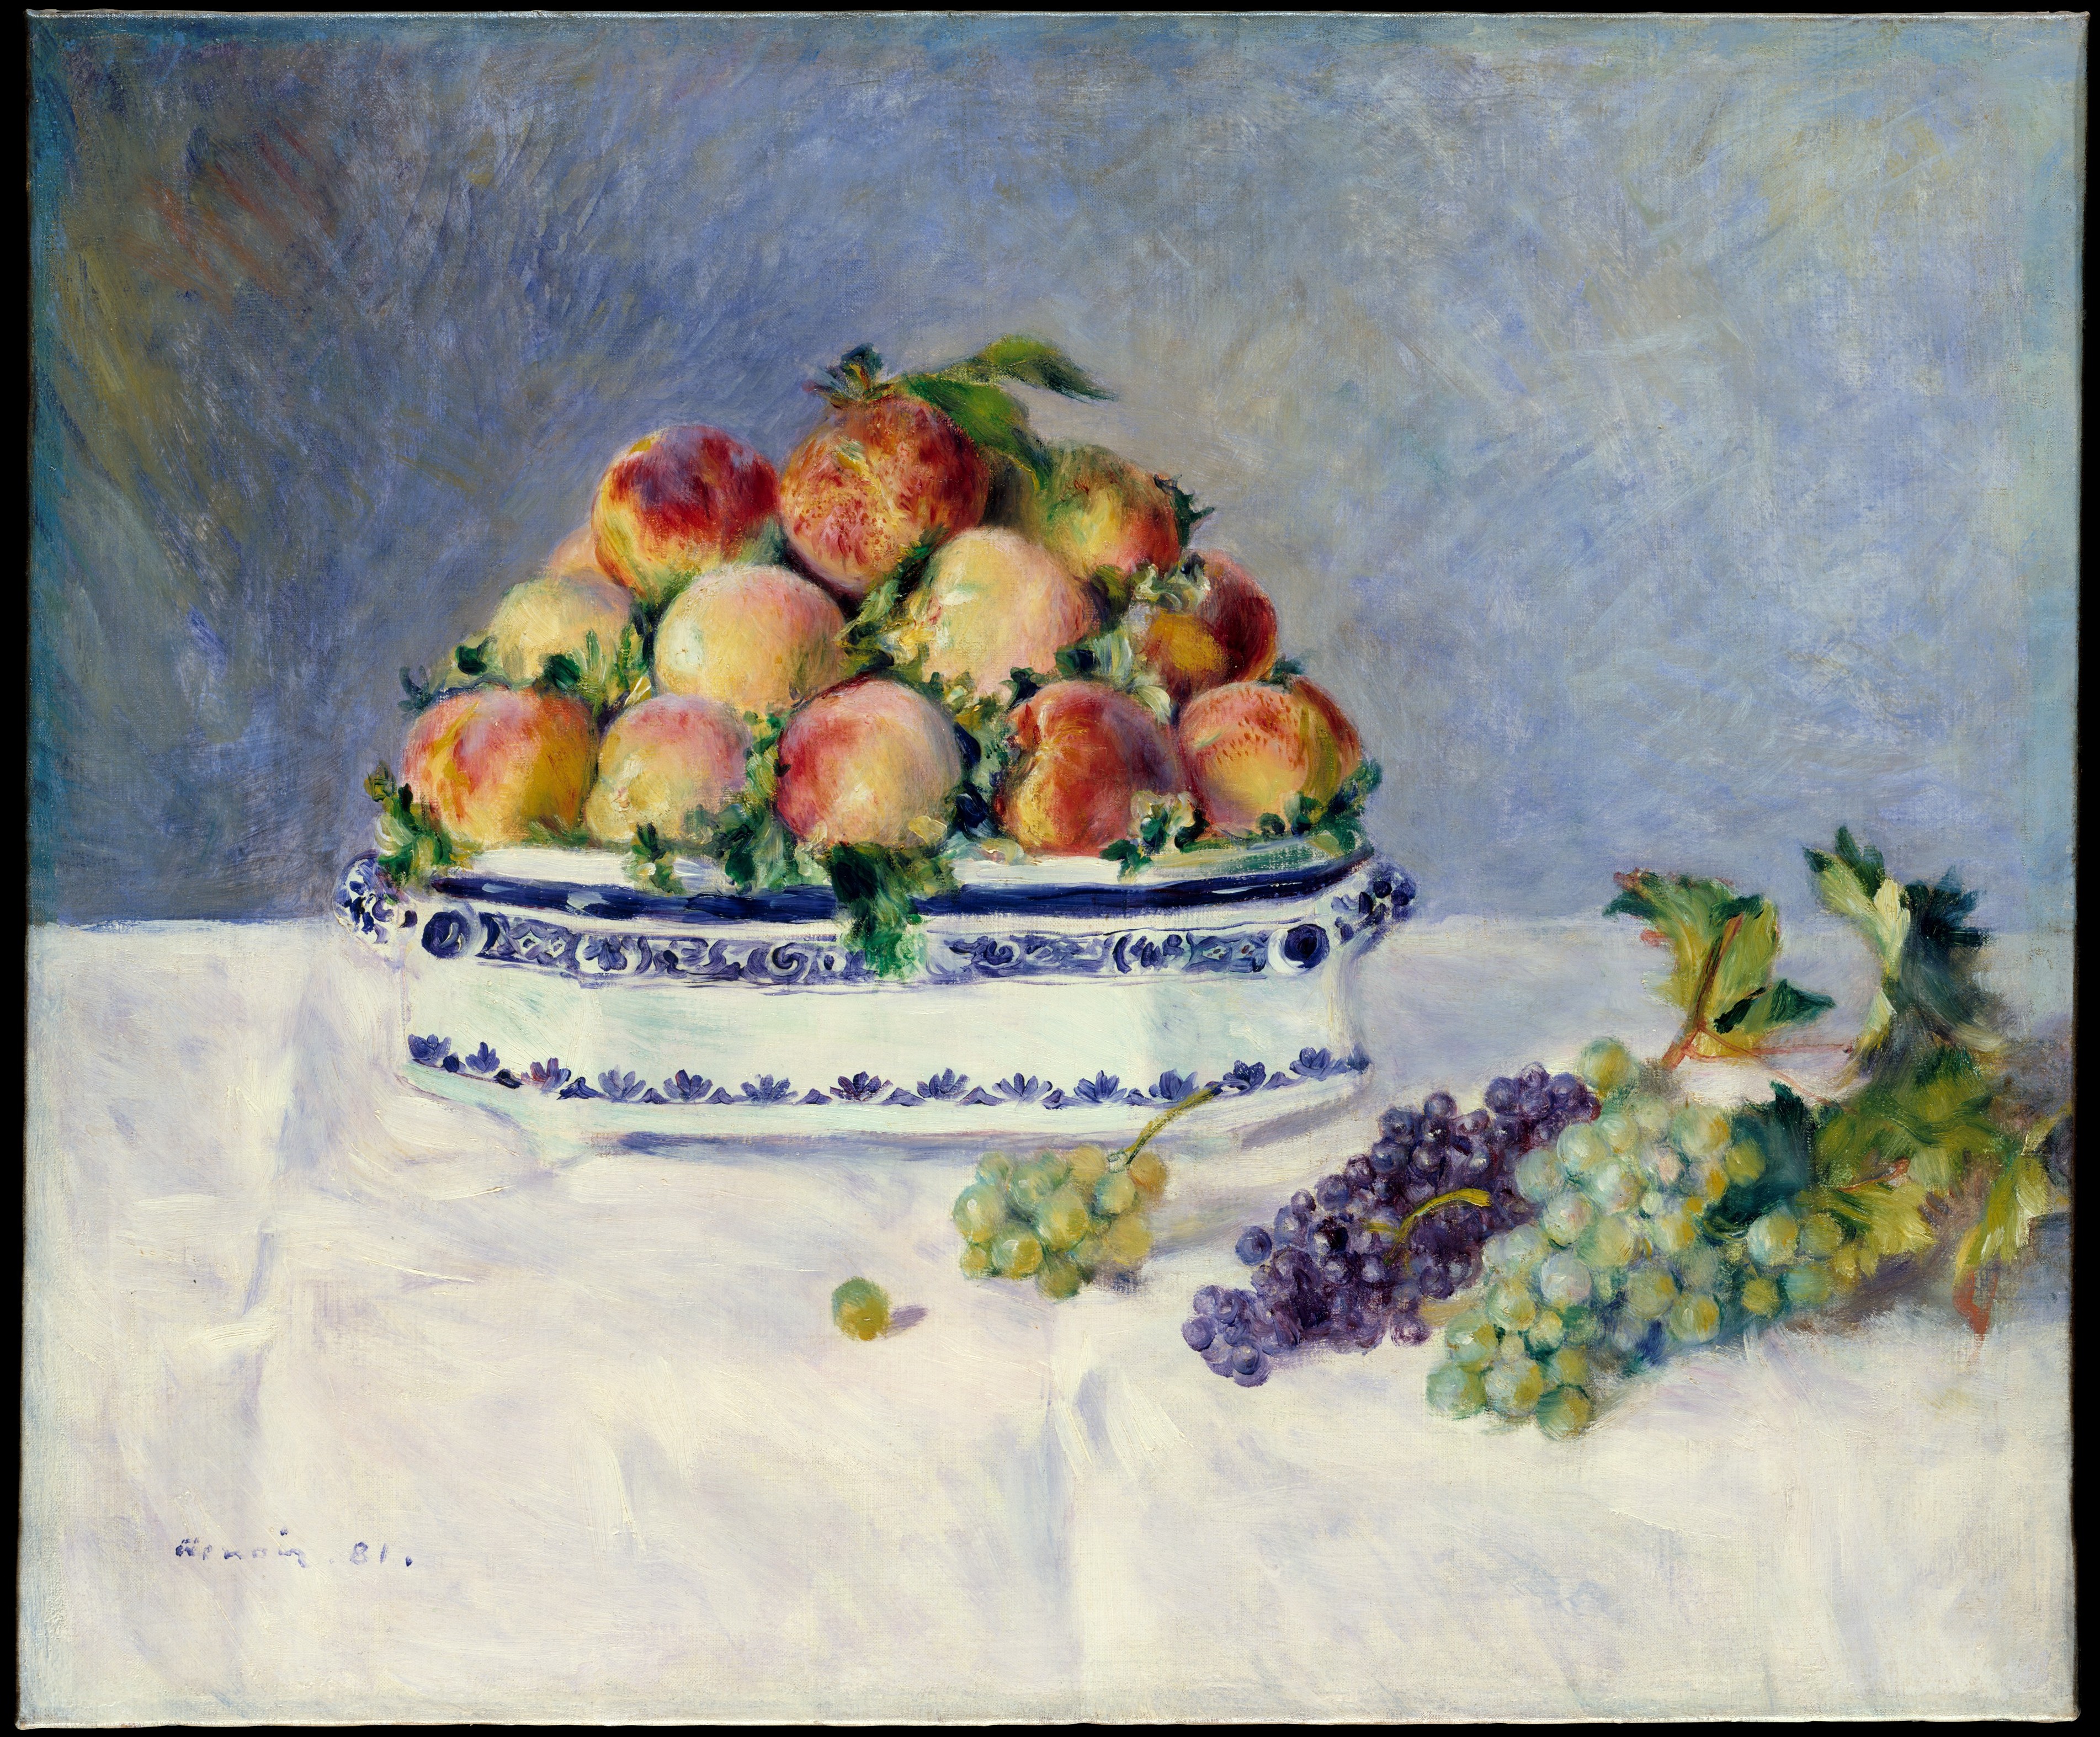 桃のある静物 by Pierre-Auguste Renoir - 1881年 - 53.3 x 64.8 cm 